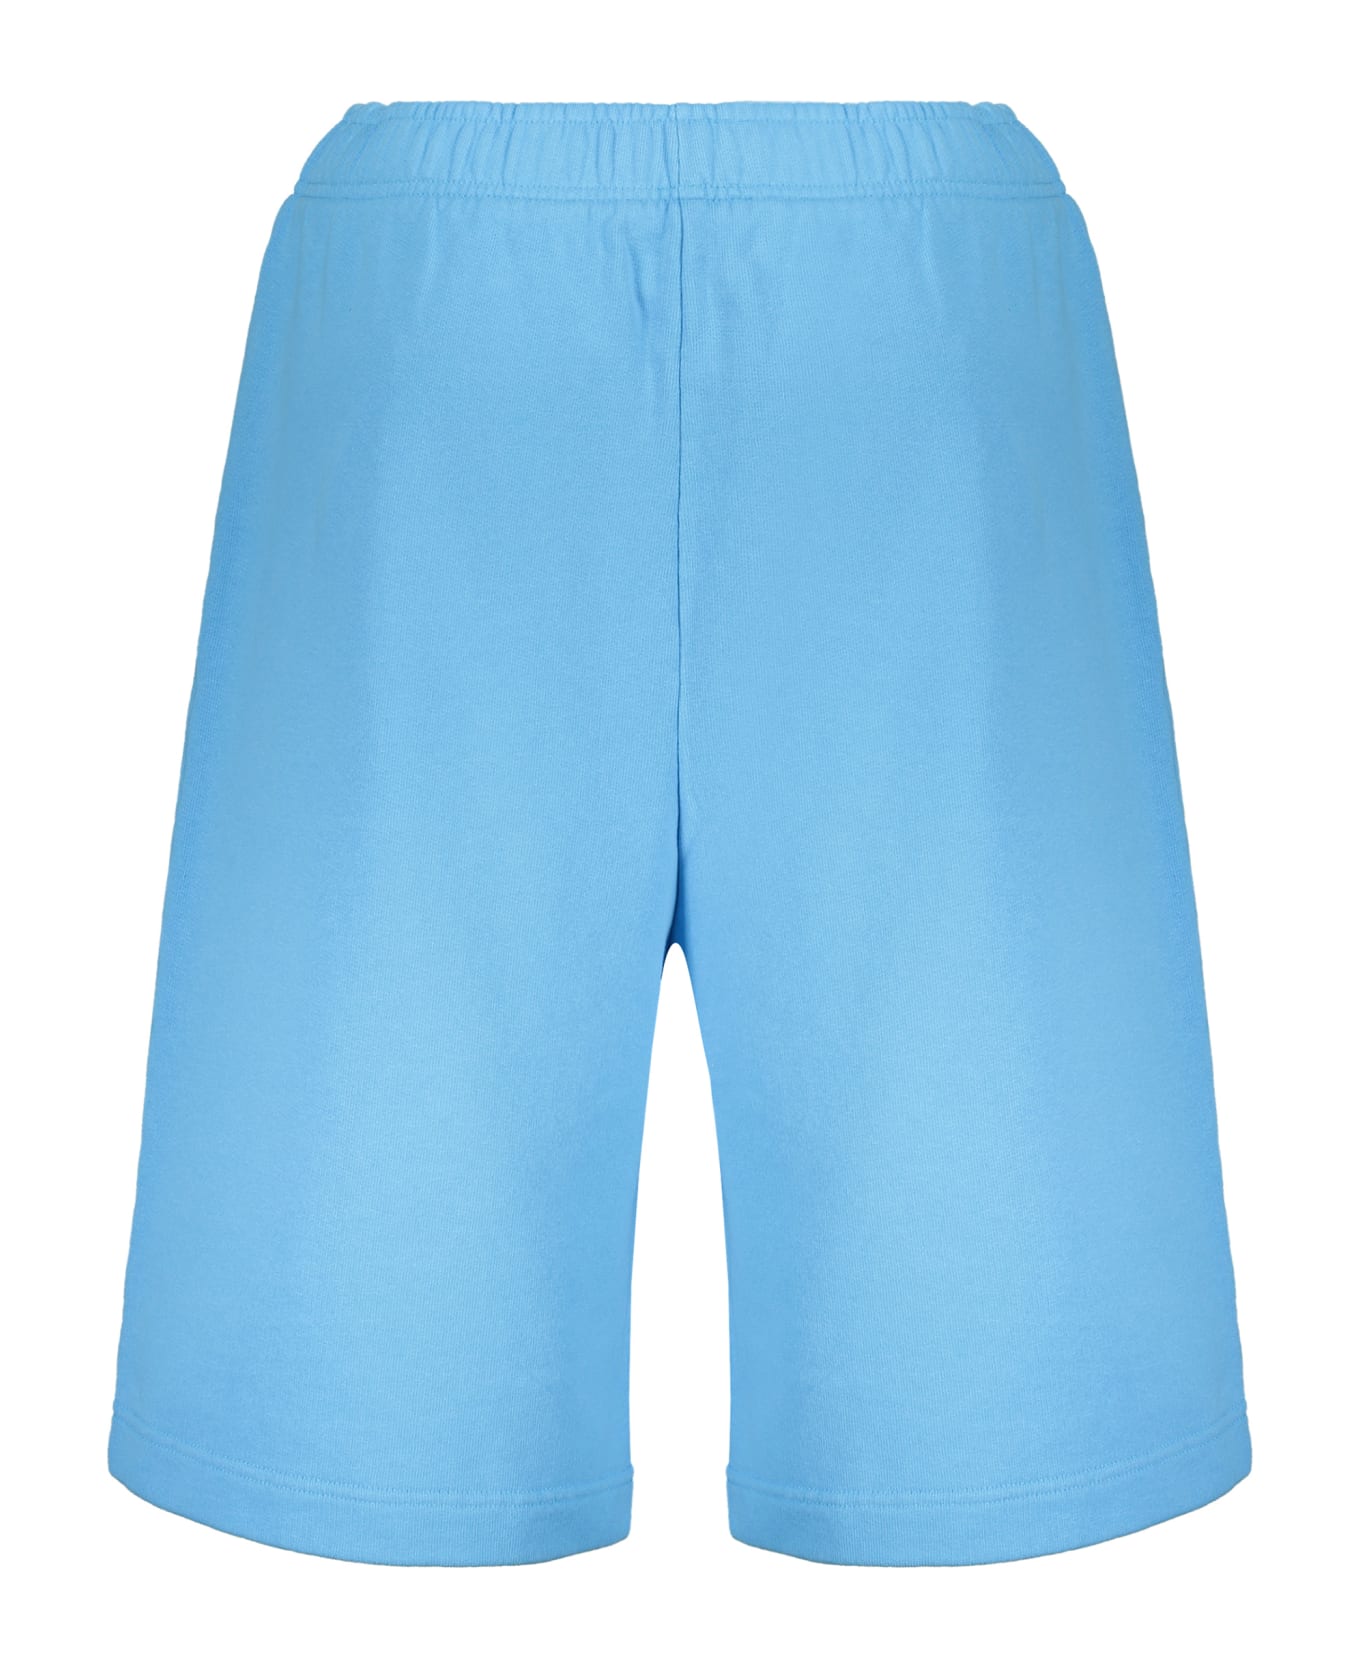 AMBUSH Bermuda Shorts - Light Blue ショートパンツ